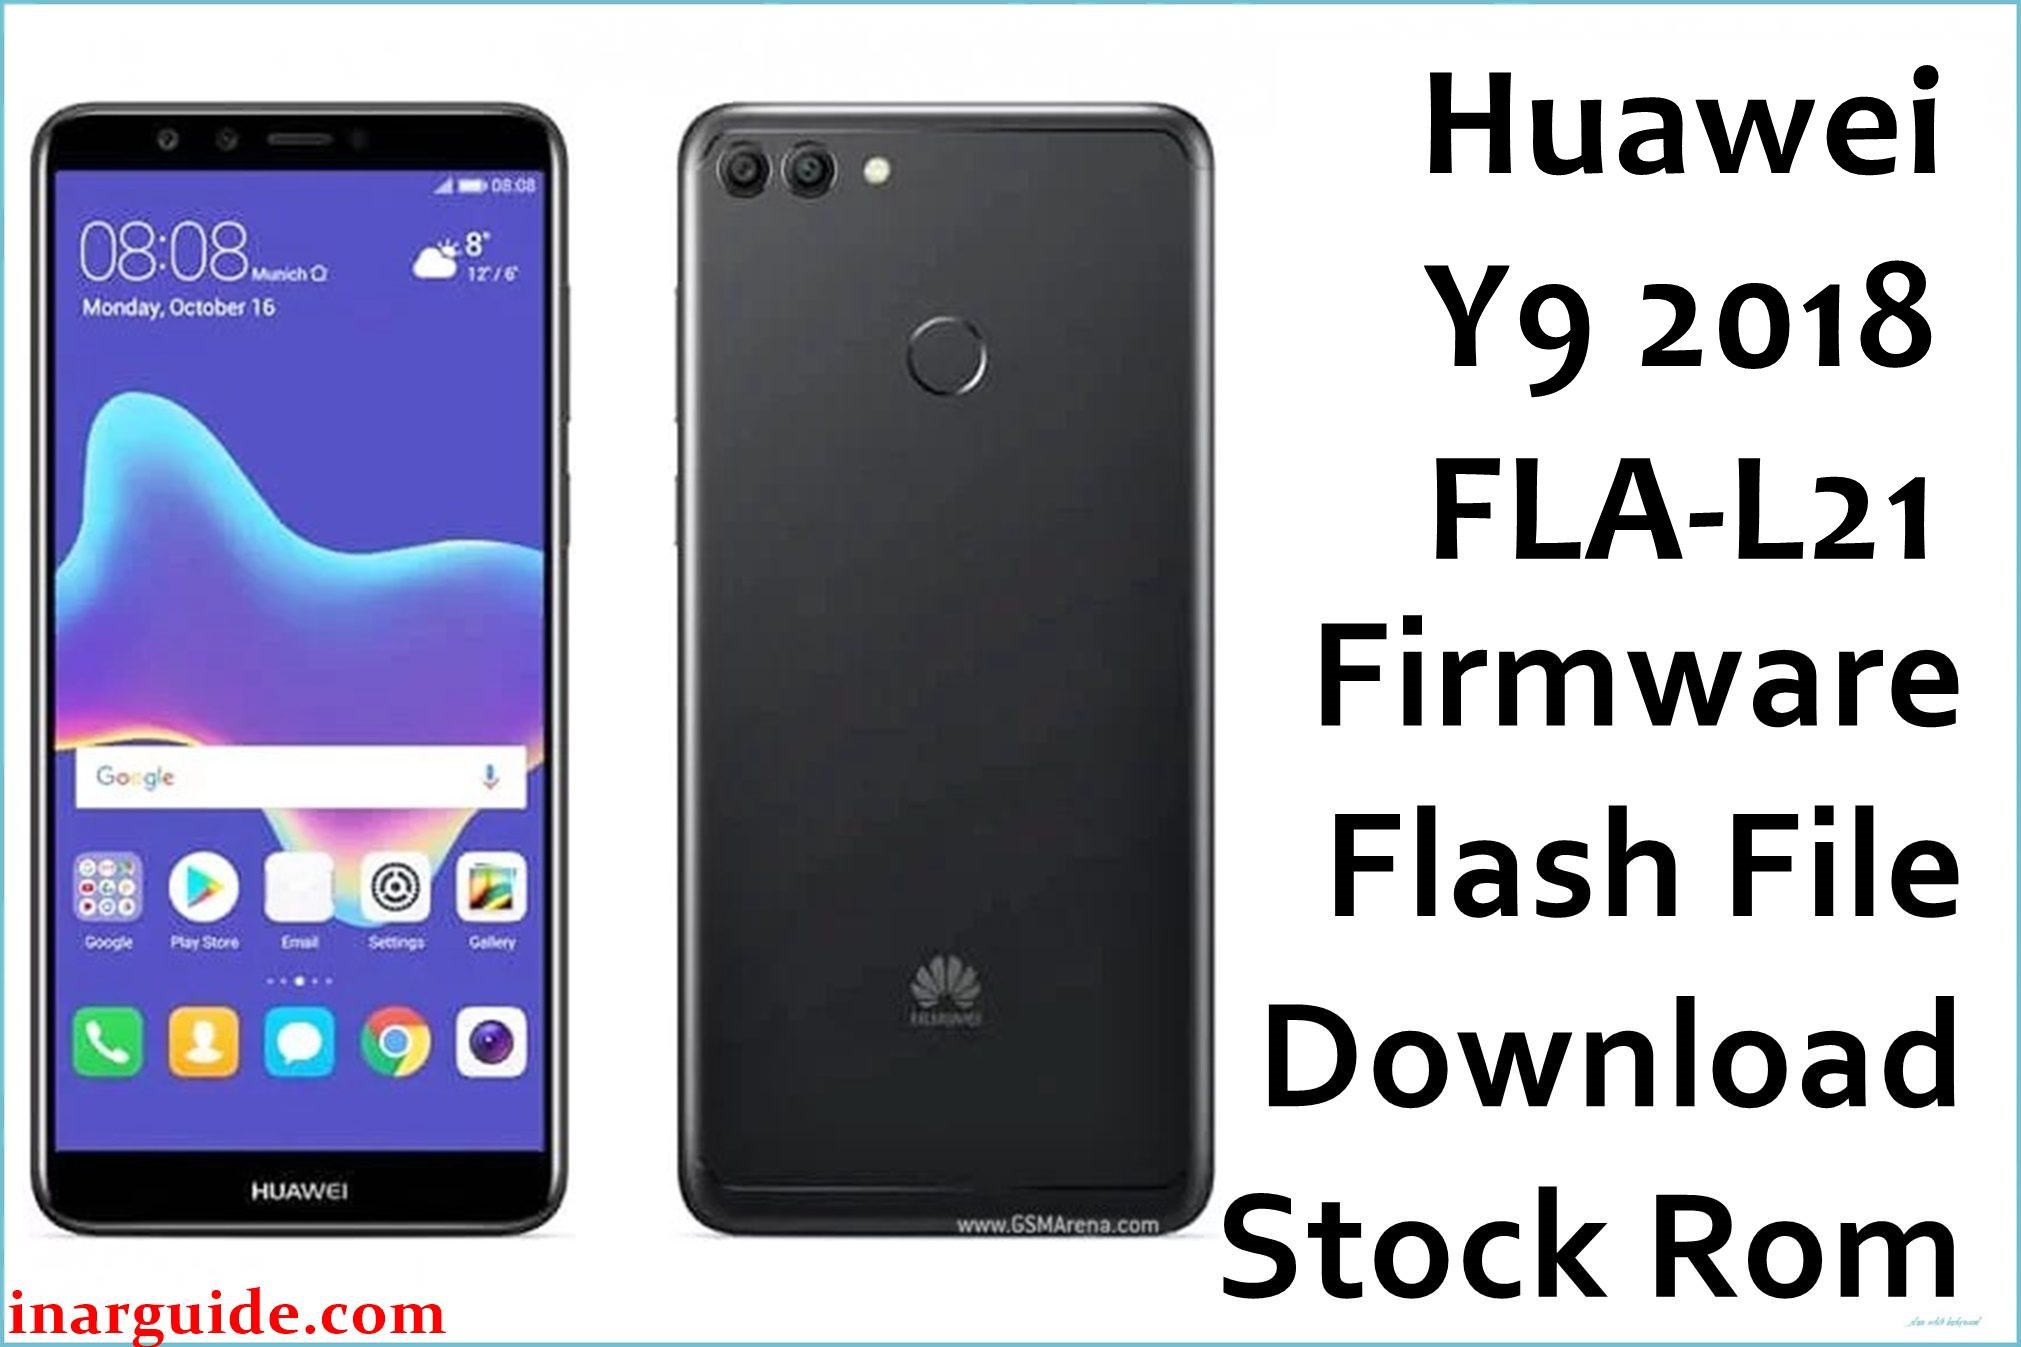 Huawei Y9 2018 FLA L21